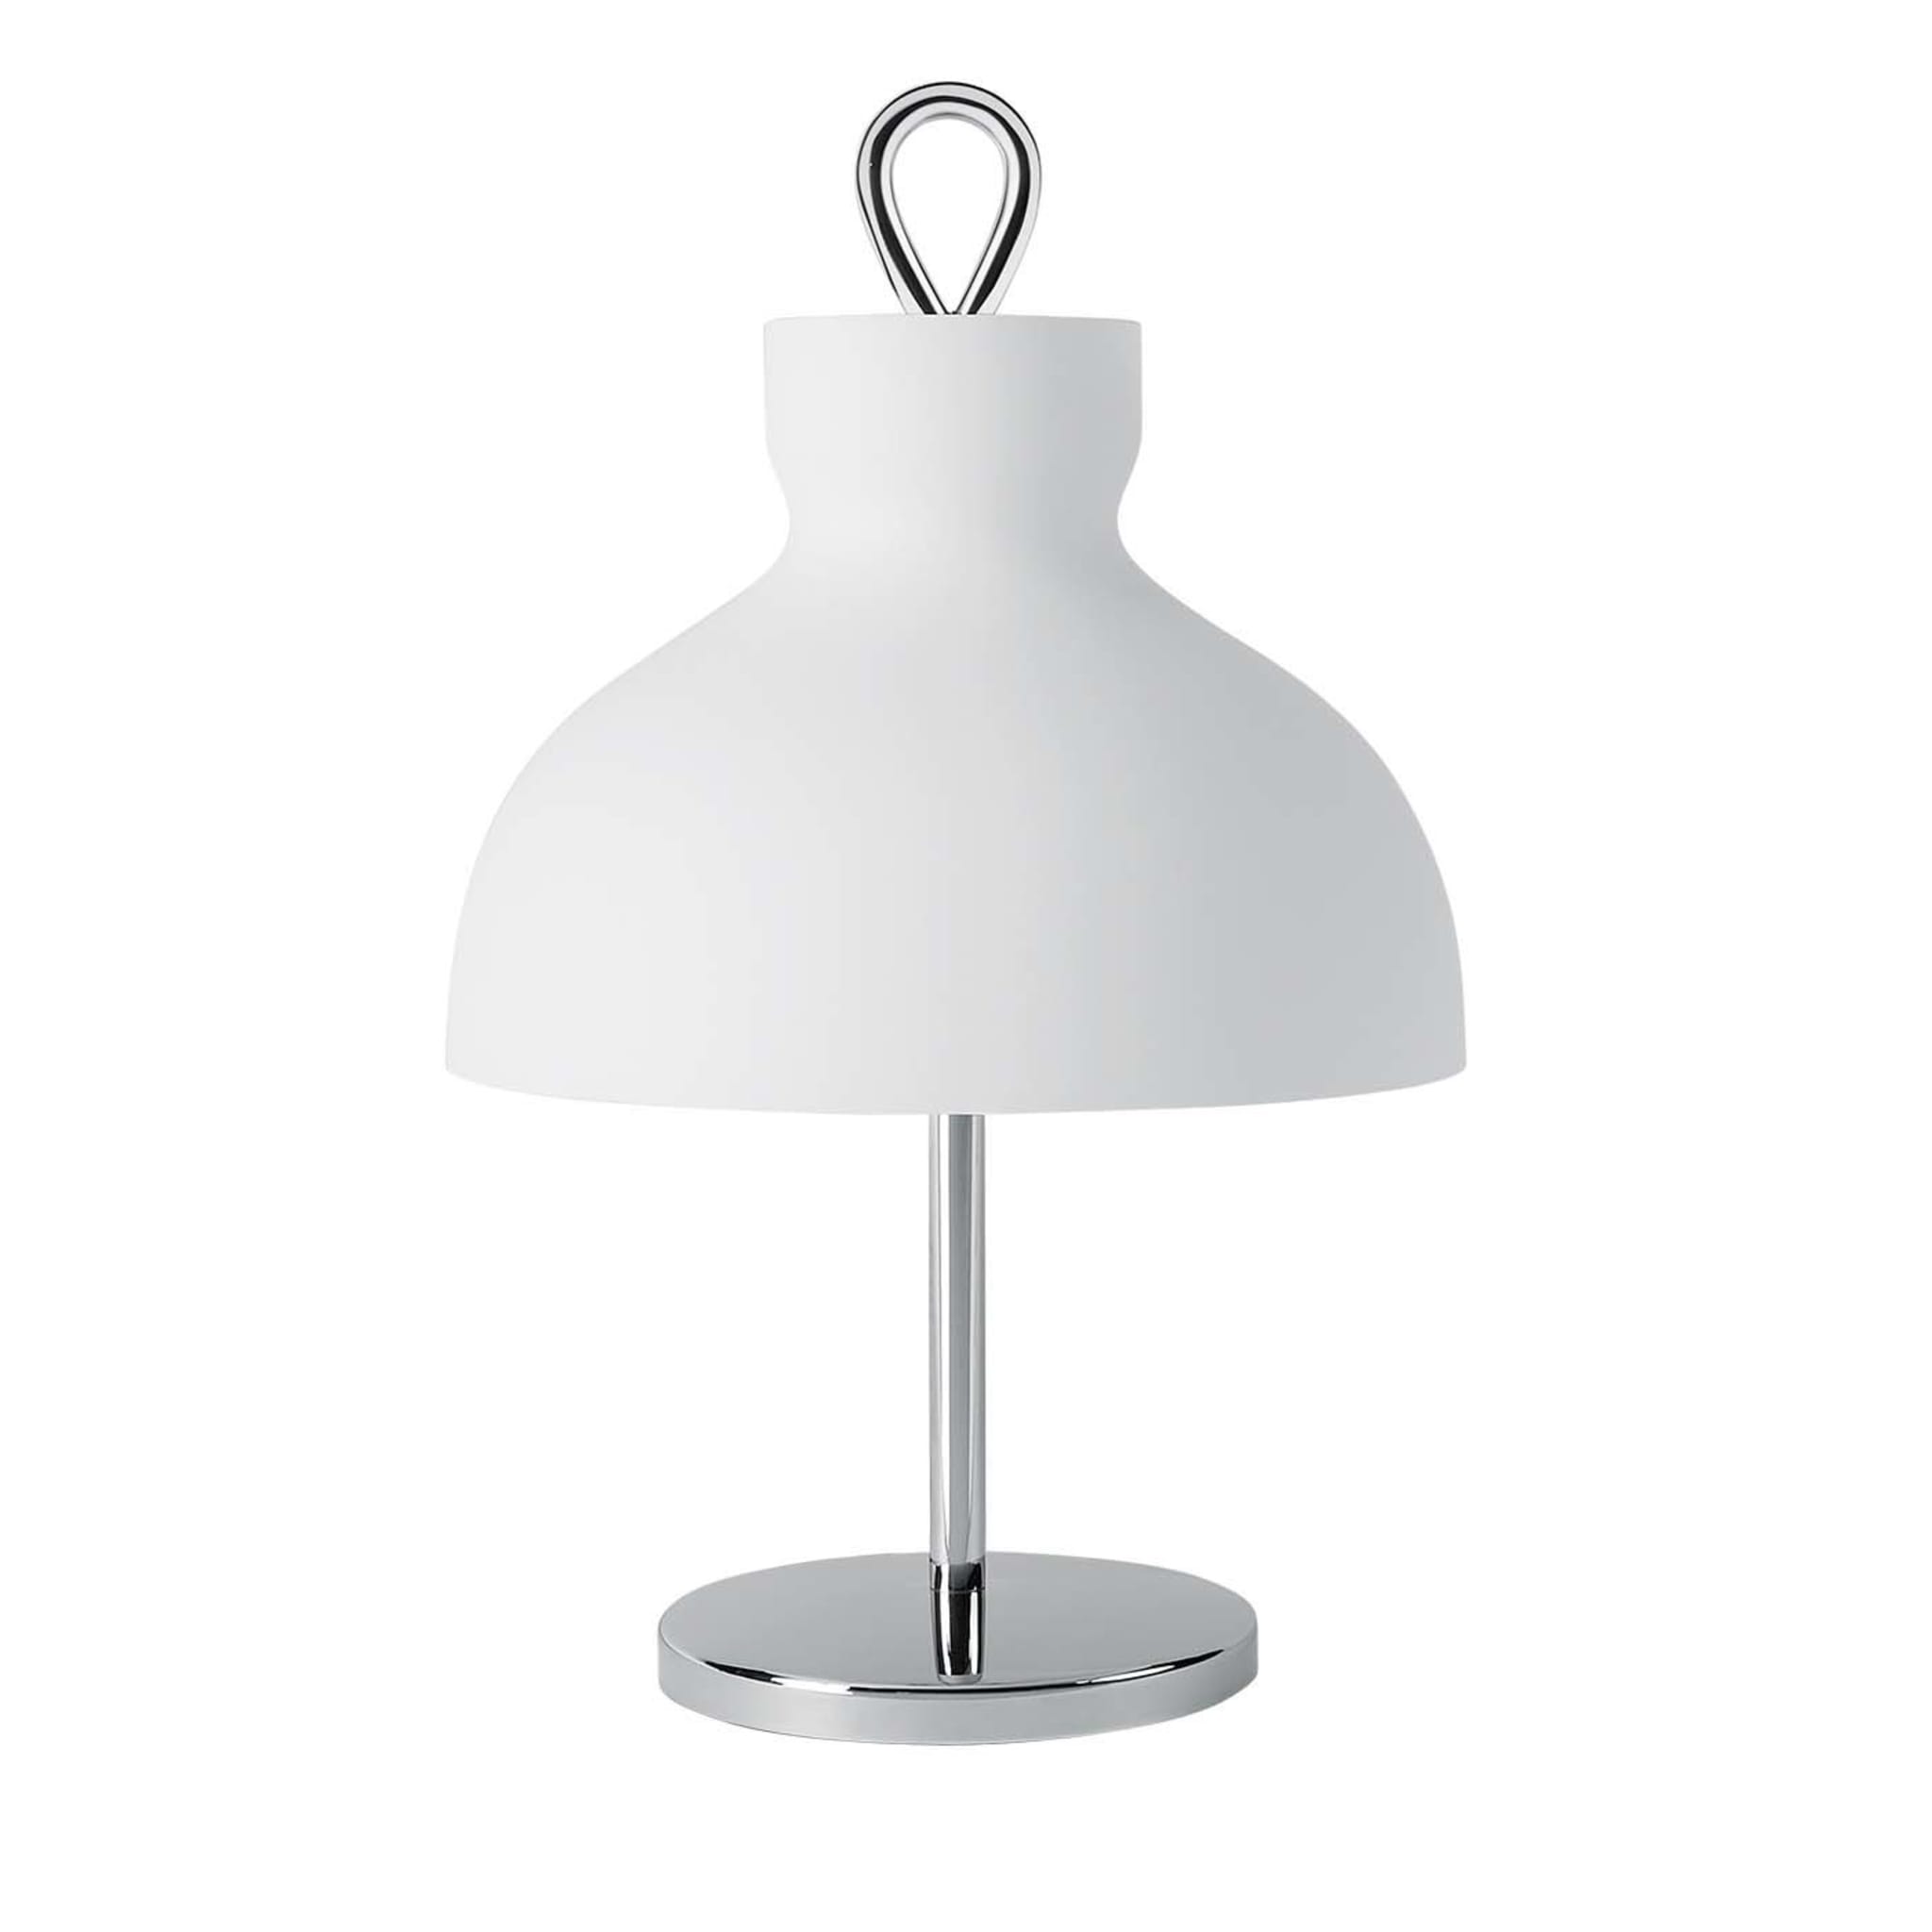 Arenzano Bassa Chrome Table Lamp by Ignazio Gardella - Main view